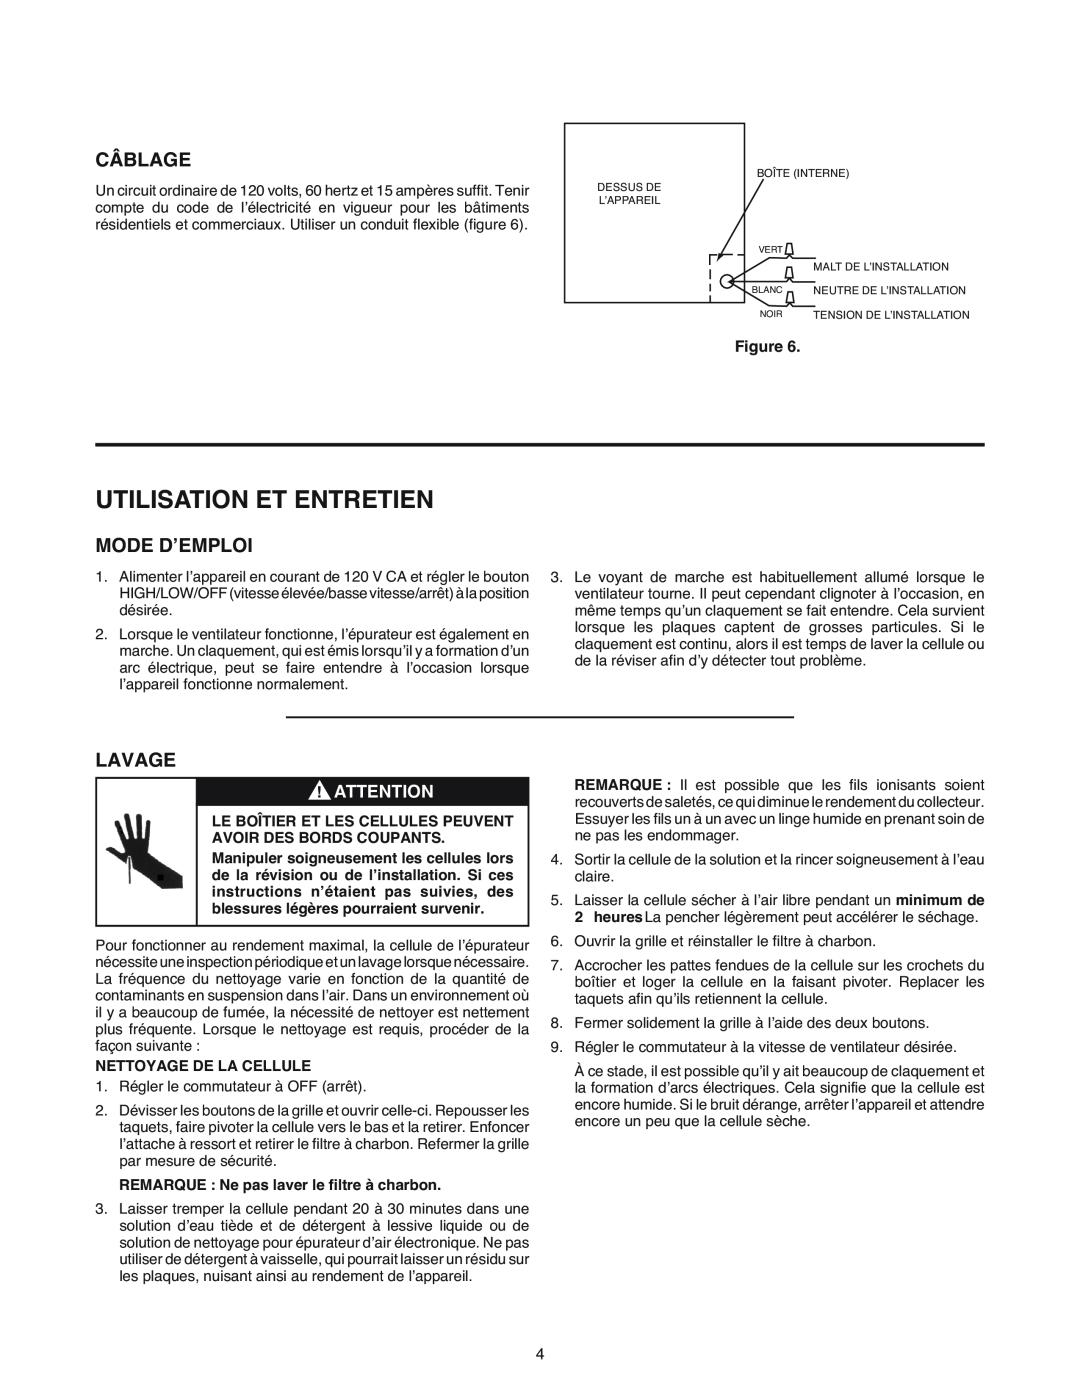 White Rodgers SSC1000 manual Utilisation Et Entretien, Câblage, Mode D’Emploi, Lavage, Nettoyage De La Cellule 